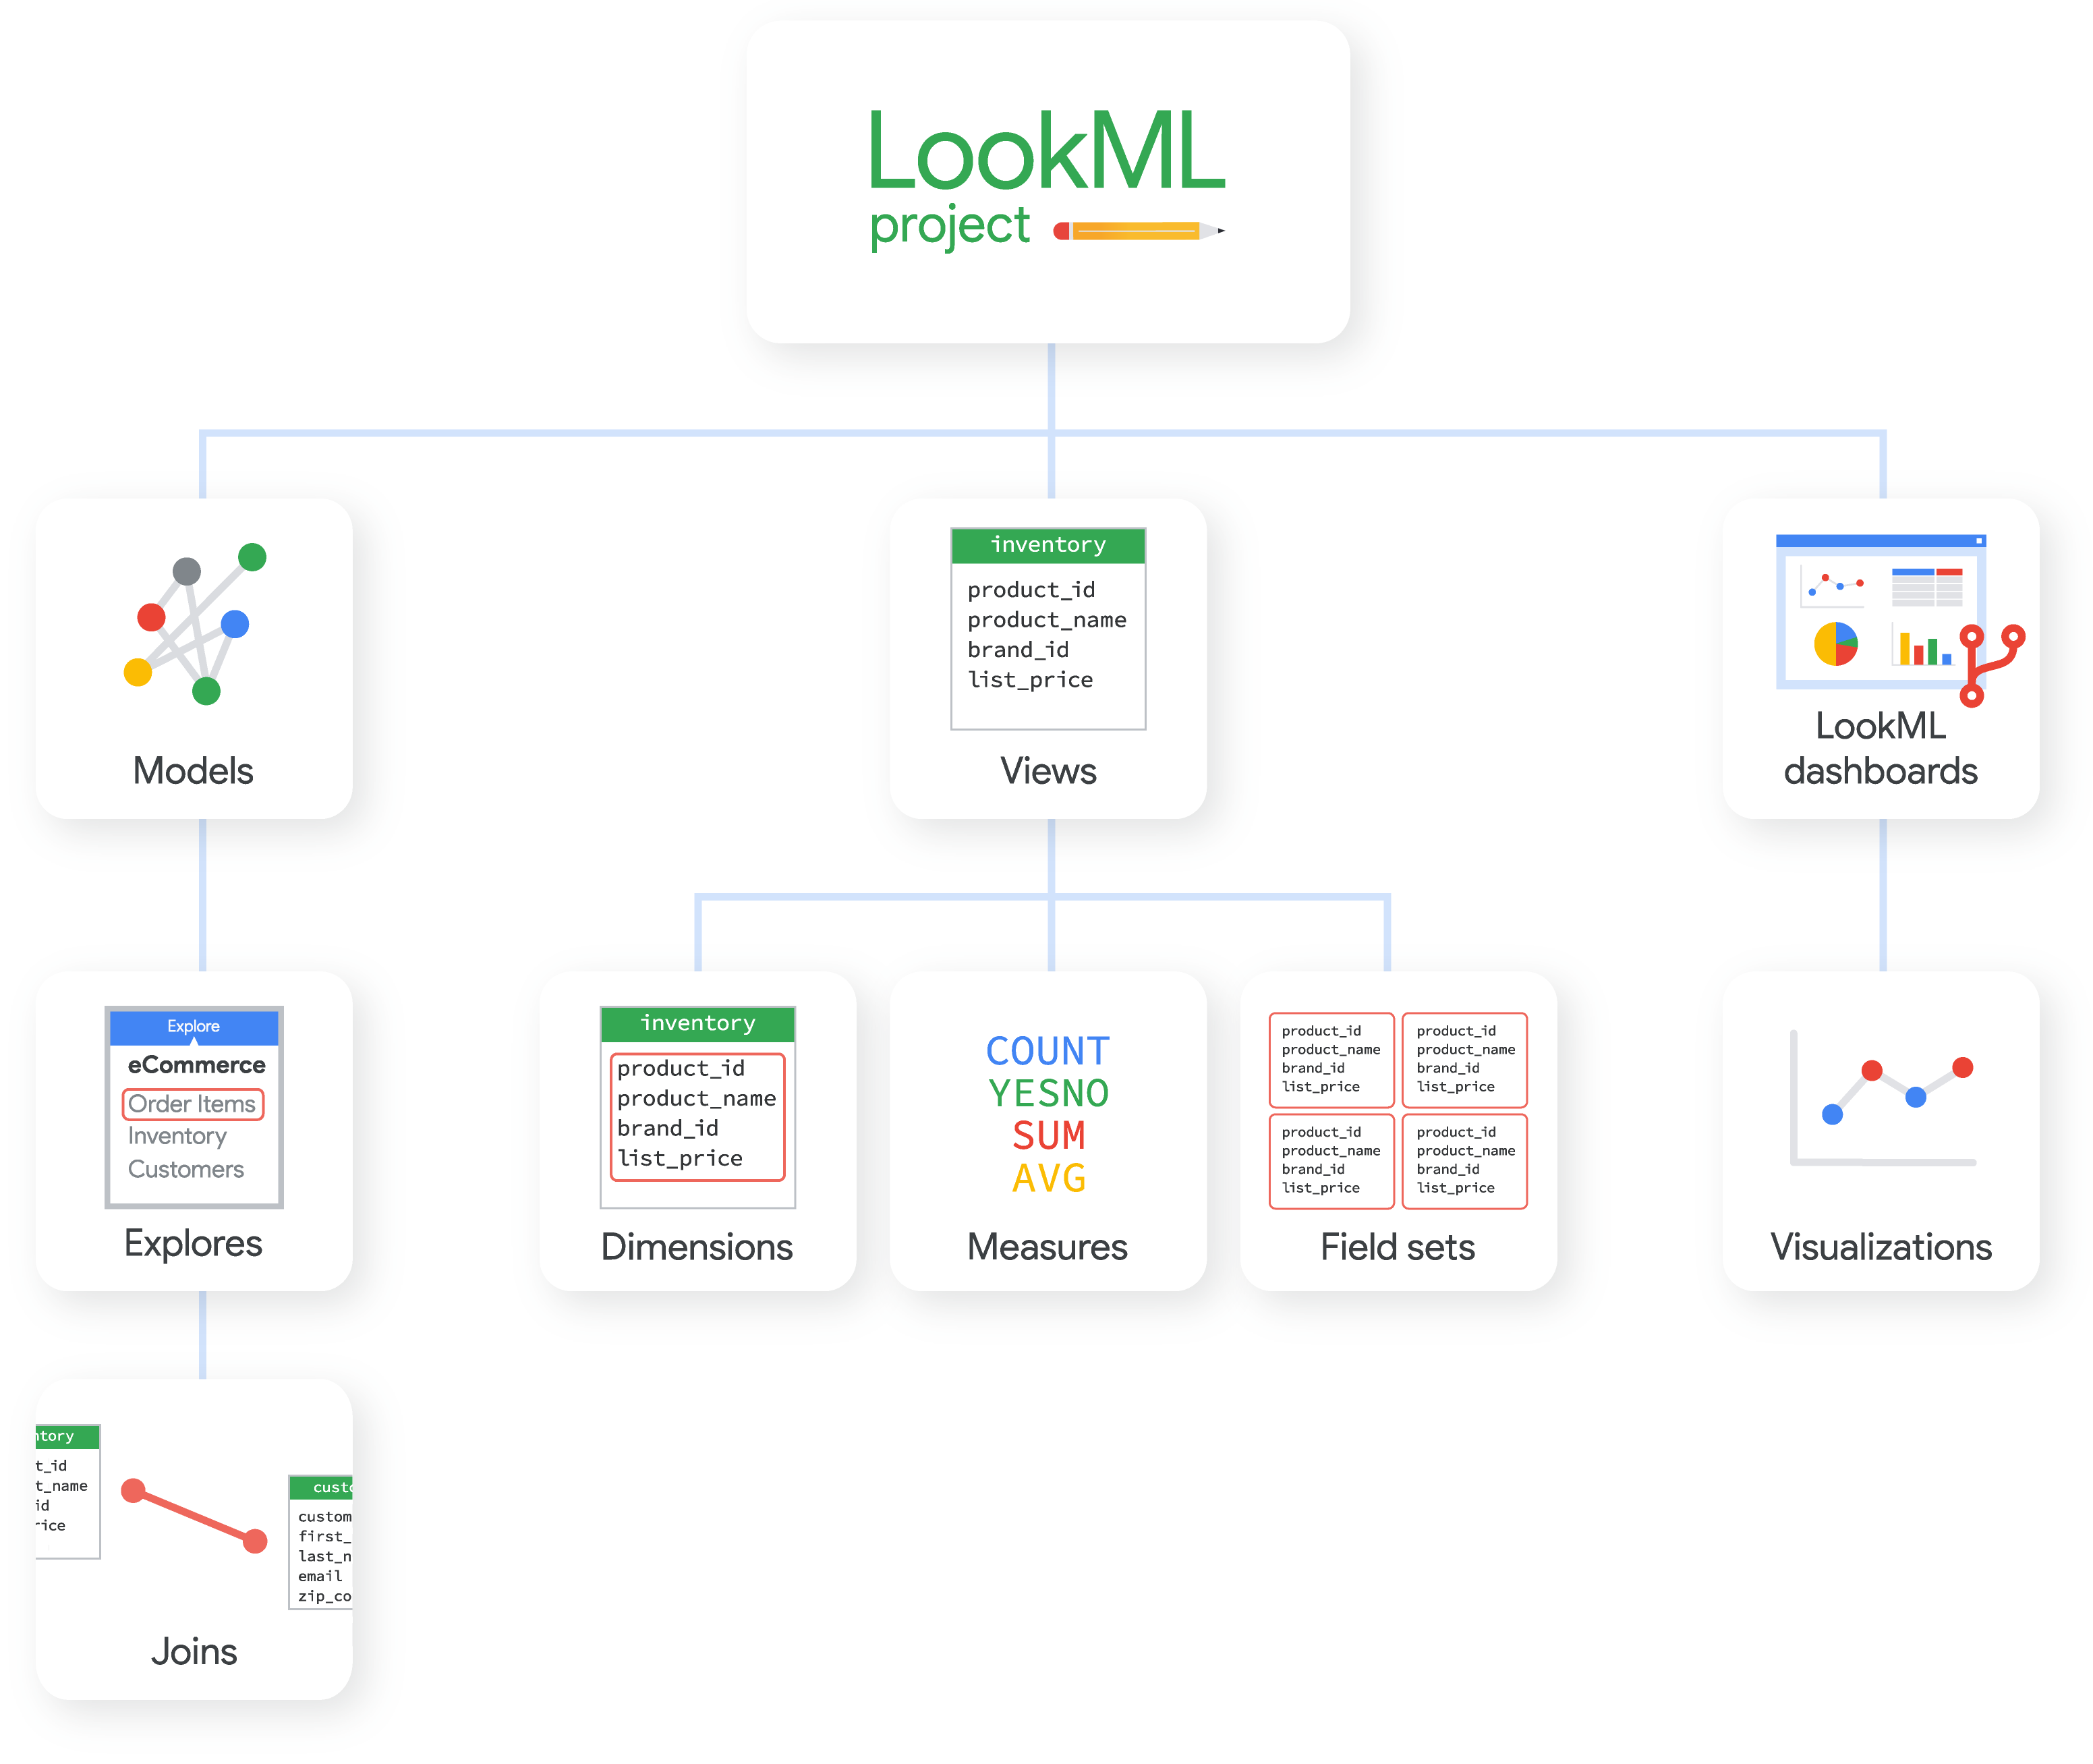 Un proyecto de LookML puede contener modelos, vistas y paneles de LookML, cada uno de los cuales forma parte de otros elementos de LookML.